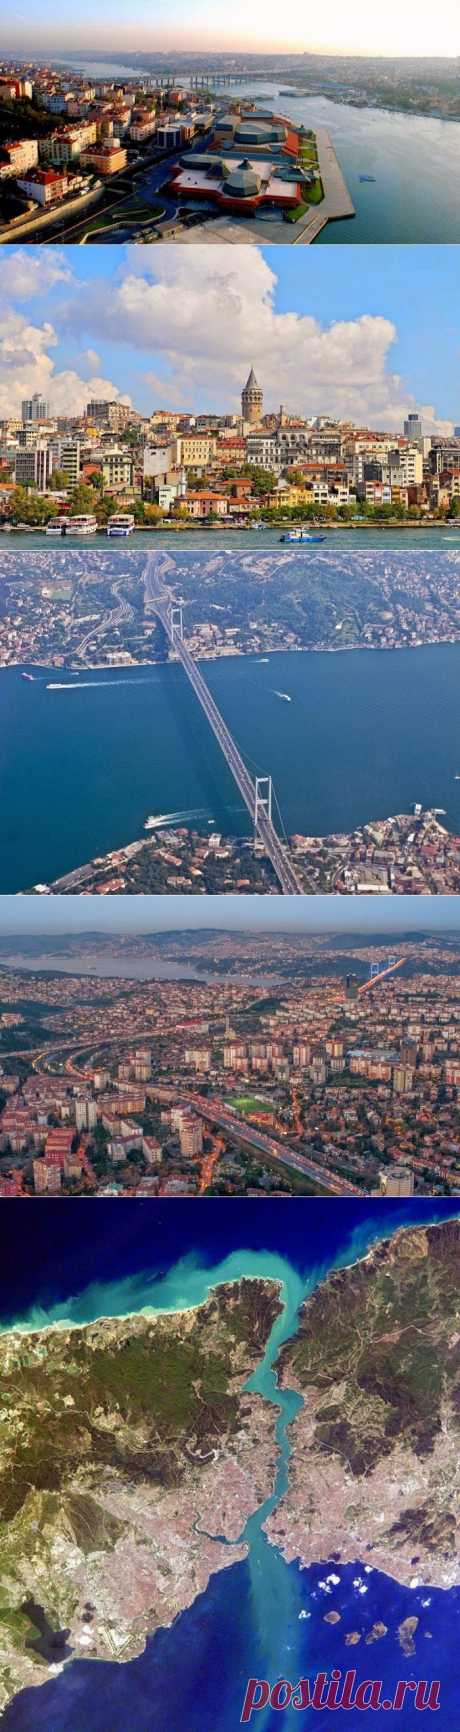 Стамбул – город двух континентов - Путешествуем вместе